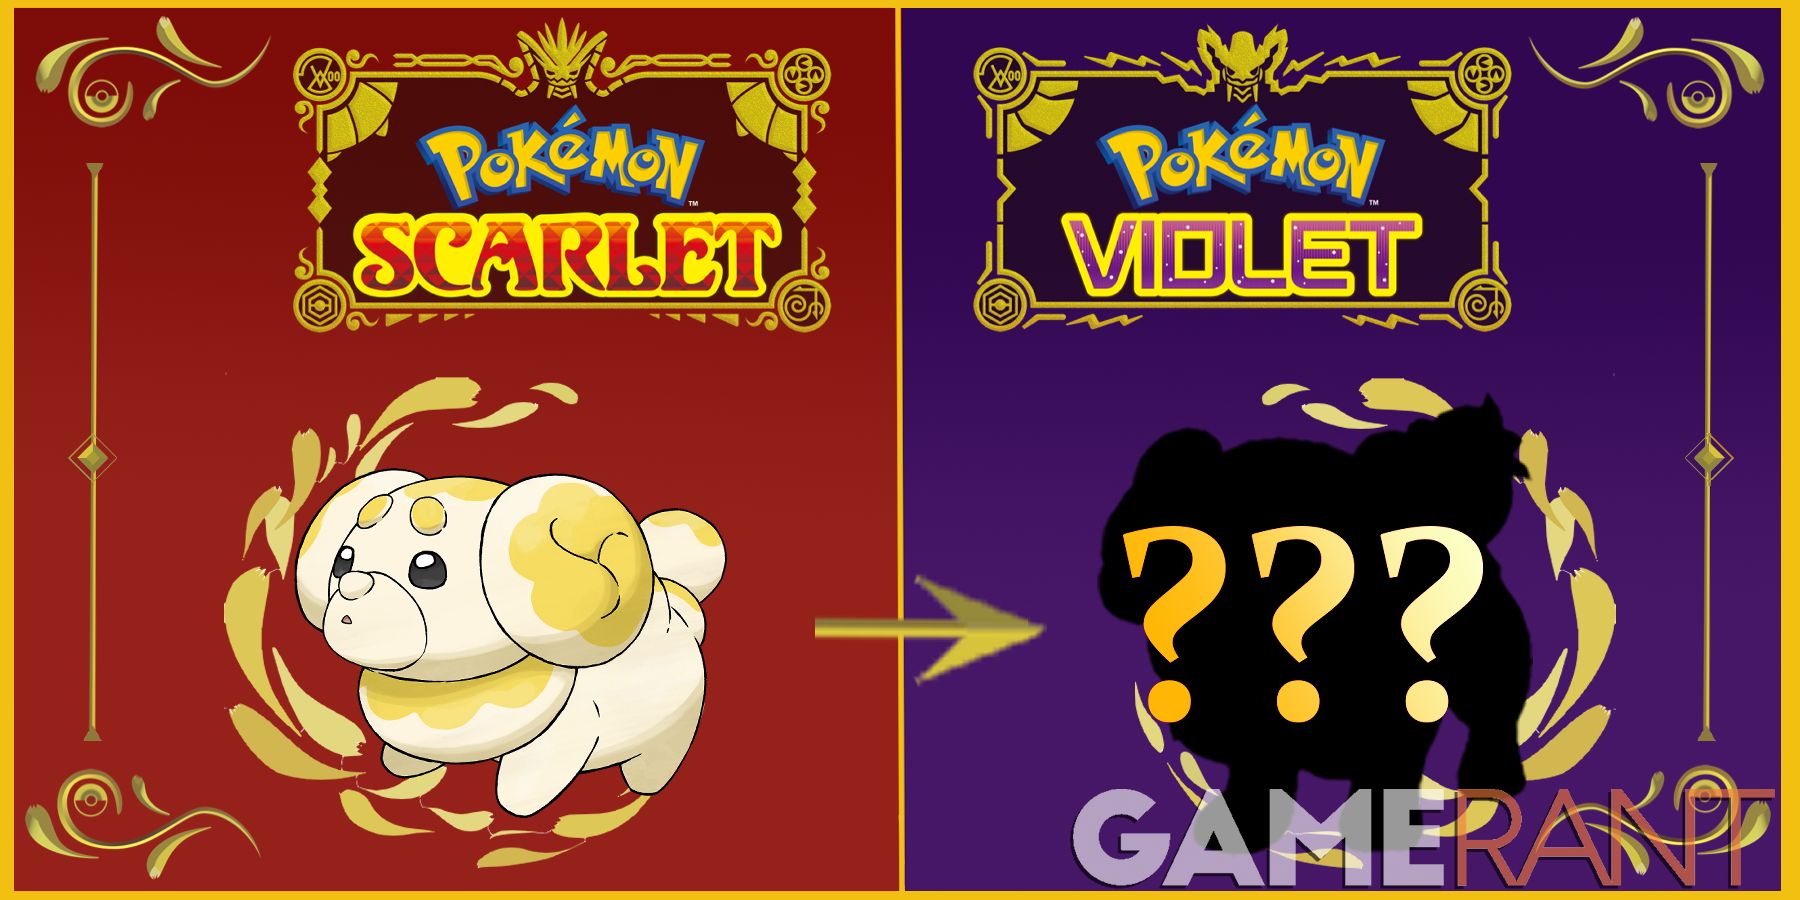 Pokemon Scarlet and Violet's Bisharp Evolution Leaks Online